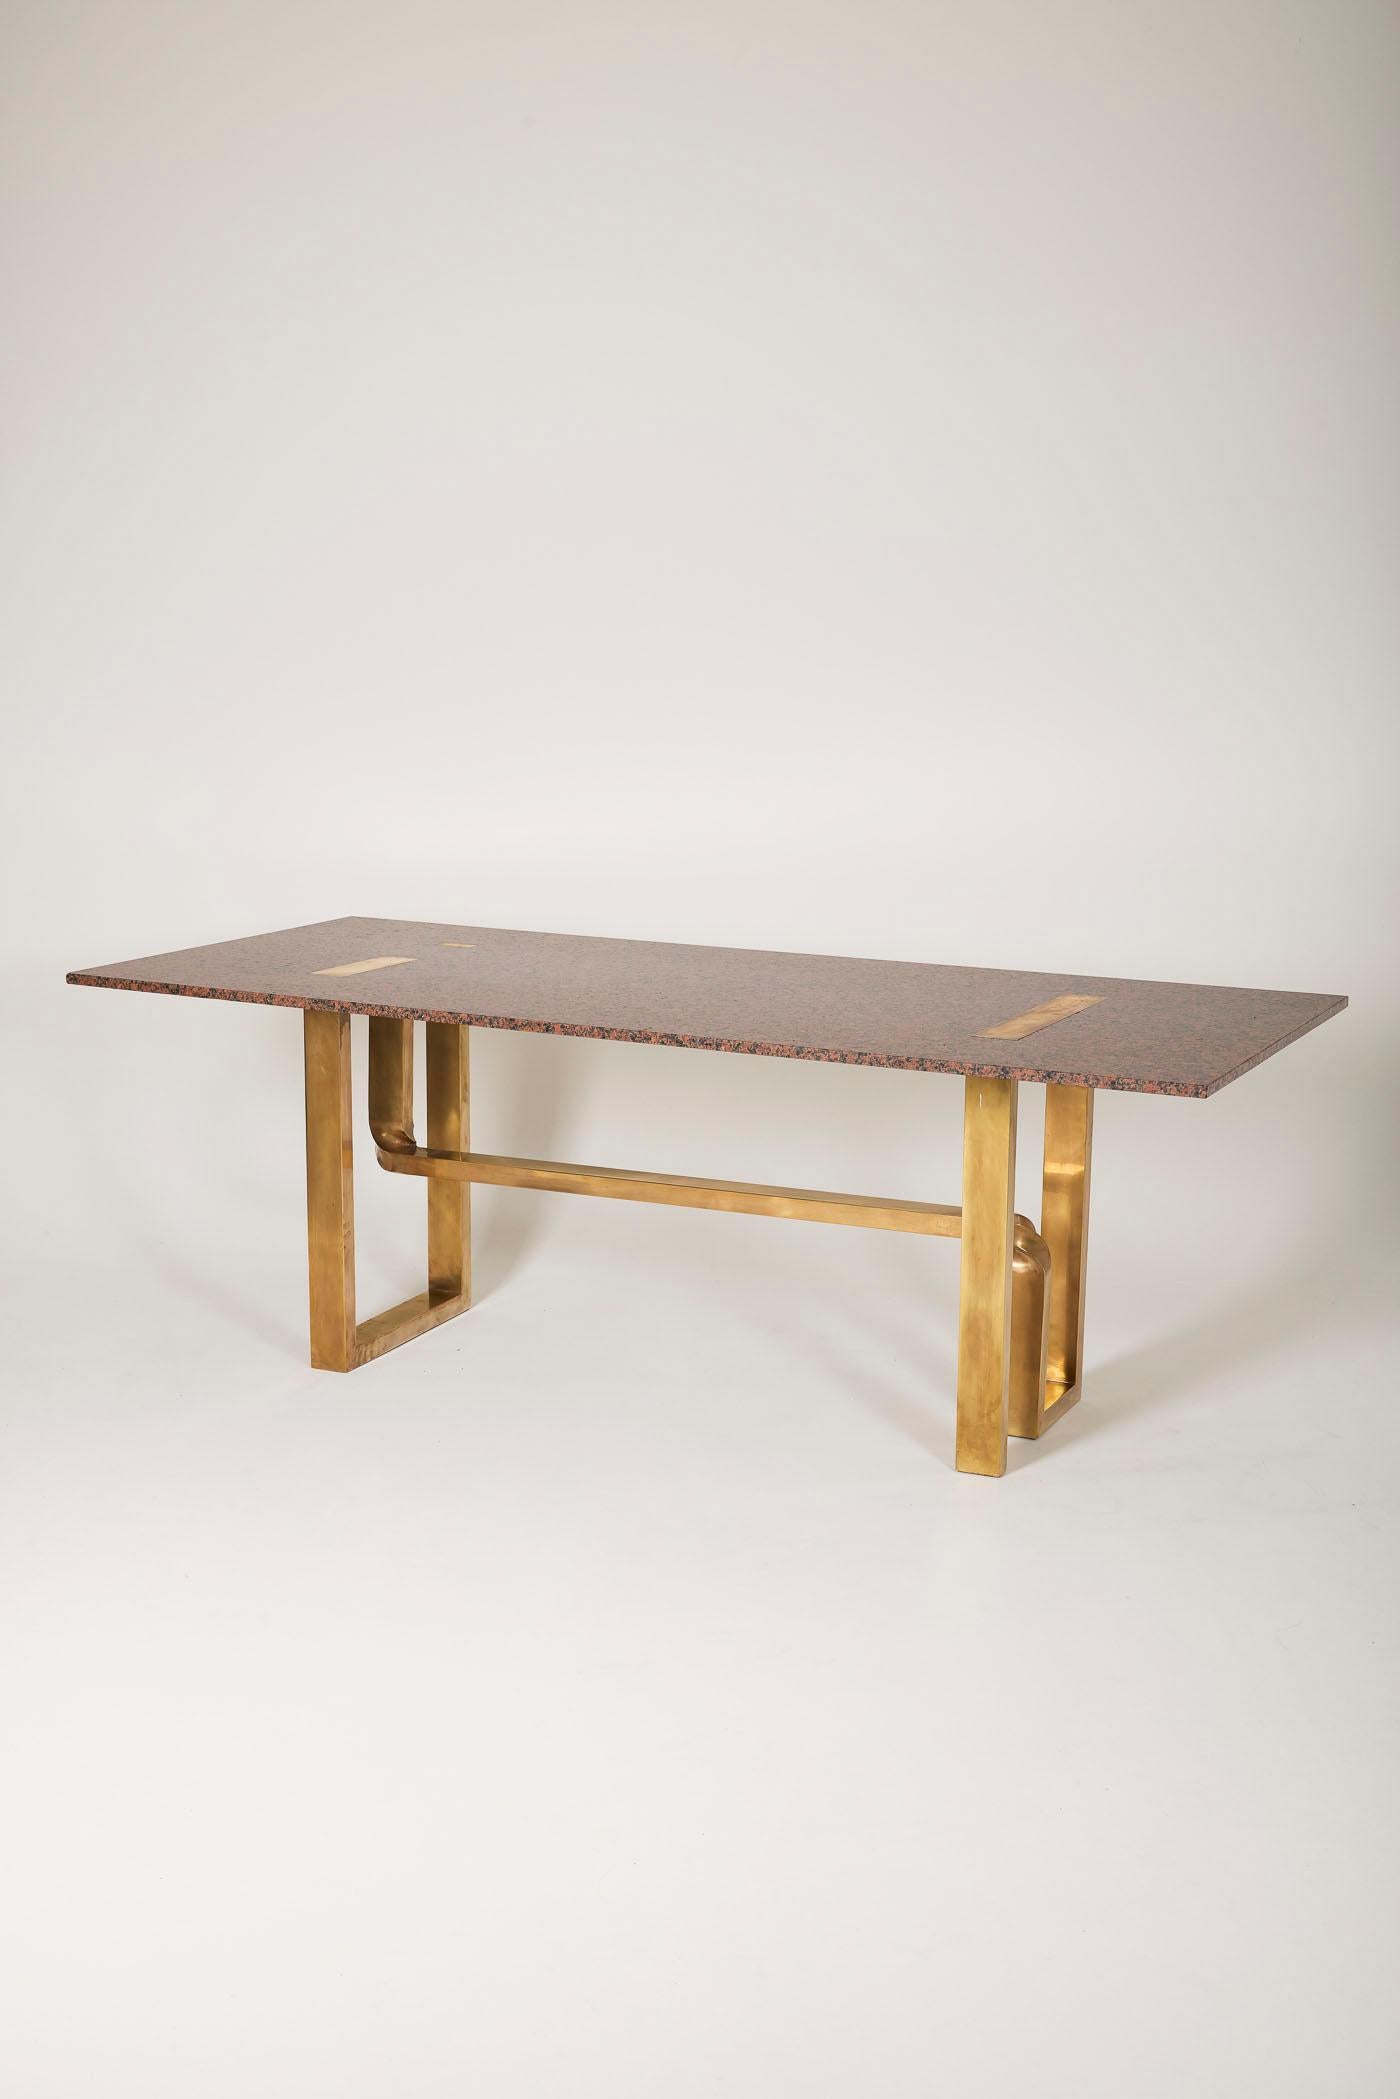 Grande table du designer Alfredo Freda pour Cittone/One. Le plateau est en granit rose et la base est en bronze avec des bras torsadés. En bon état.
DV121